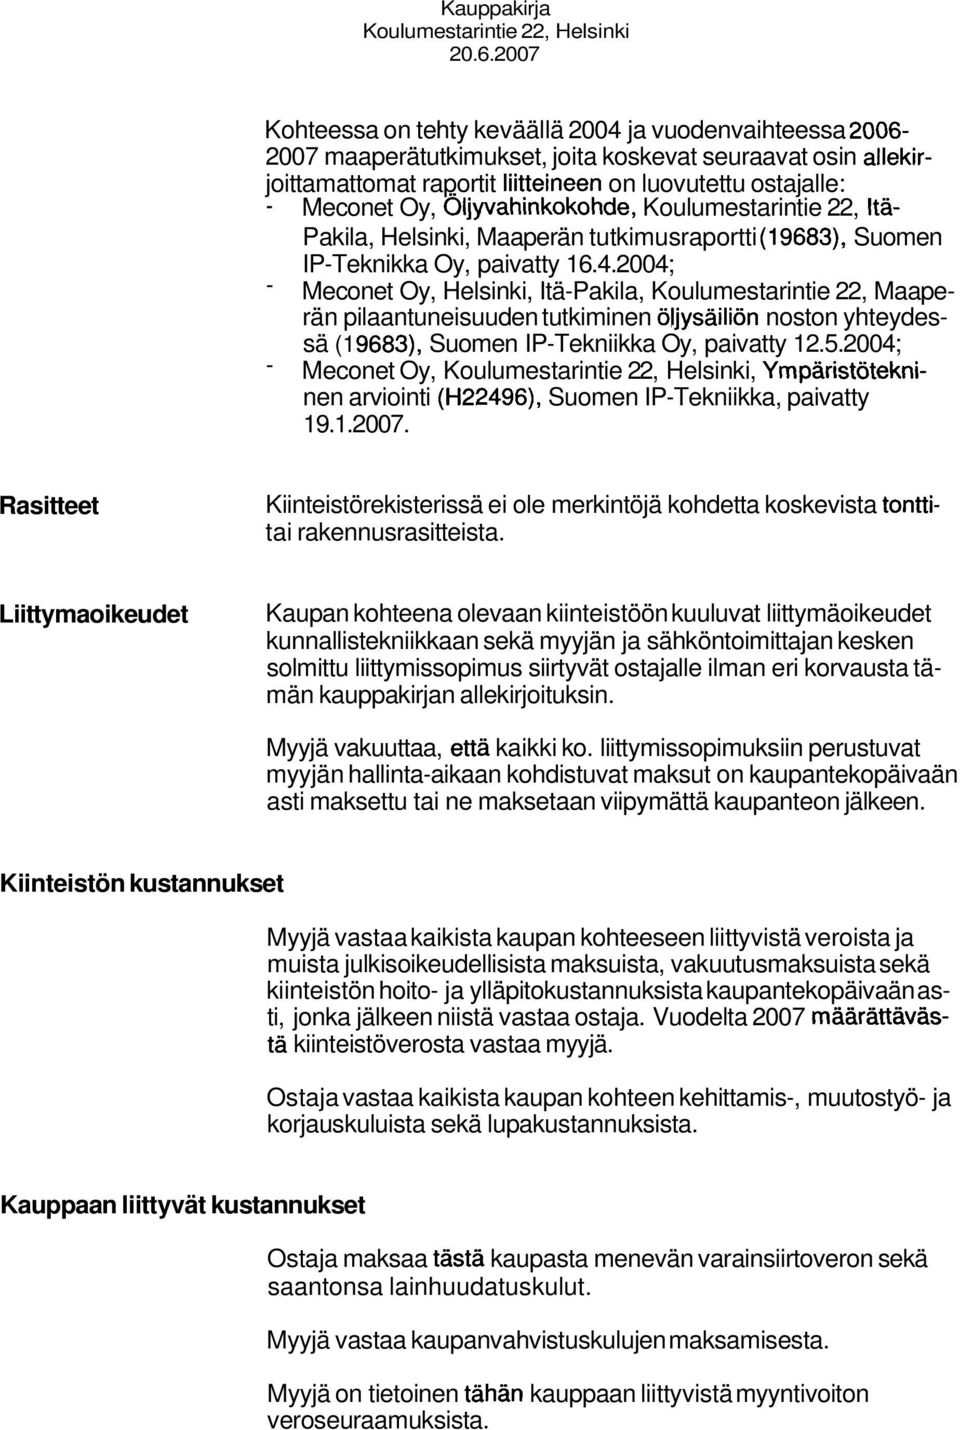 2004; - Meconet Oy, Helsinki, Itä-Pakila, Koulumestarintie 22, Maaperän pilaantuneisuuden tutkiminen öljysäiliön noston yhteydessä (1 9683), Suomen IP-Tekniikka Oy, paivatty 12.5.